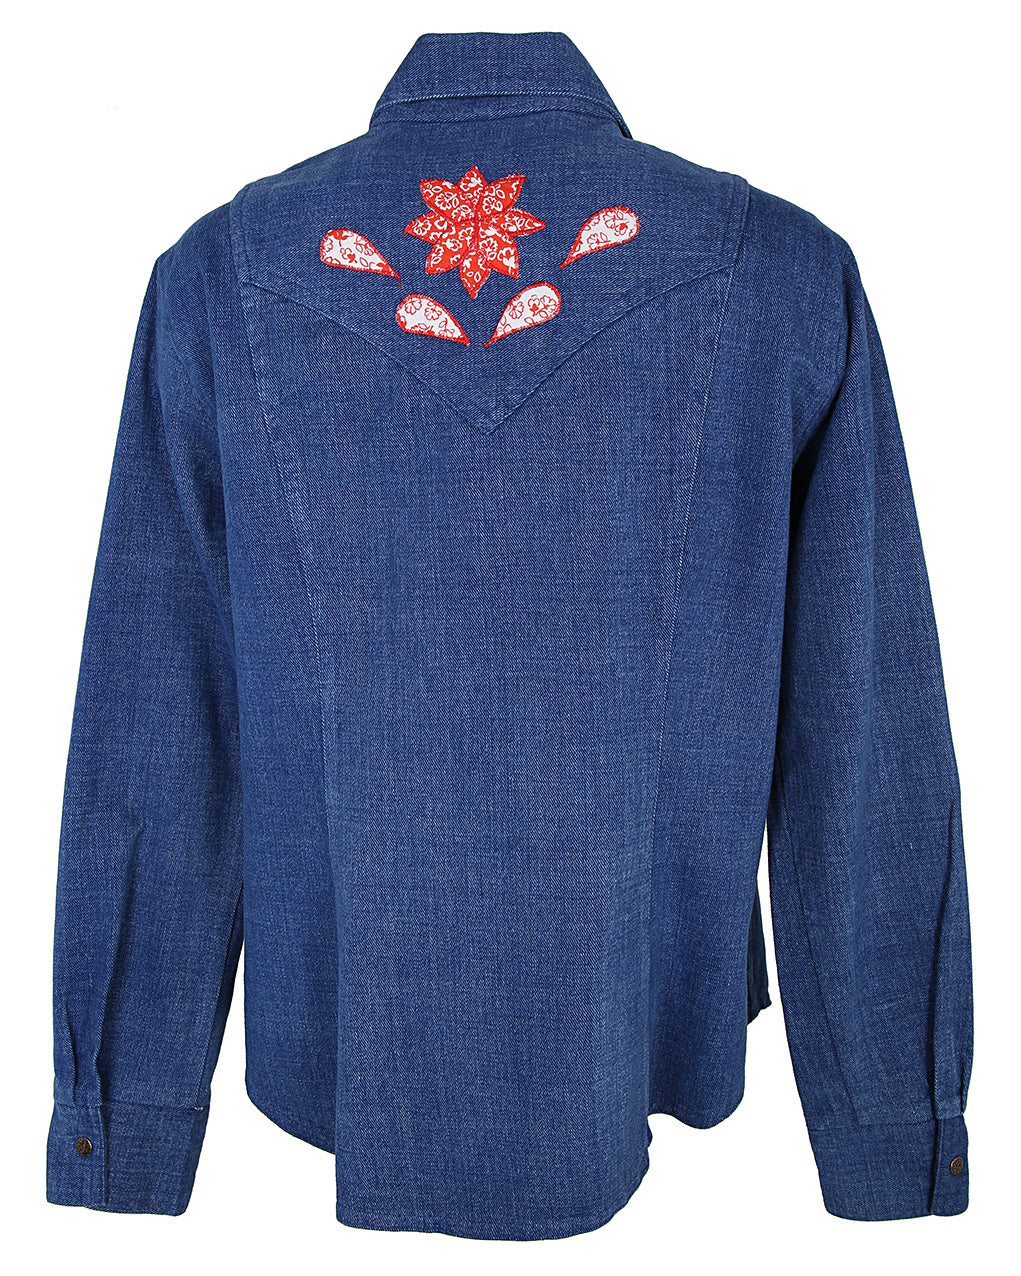 70s Lady Caravan Patchwork Applique Blue Denim Dagger Collar Shirt - L